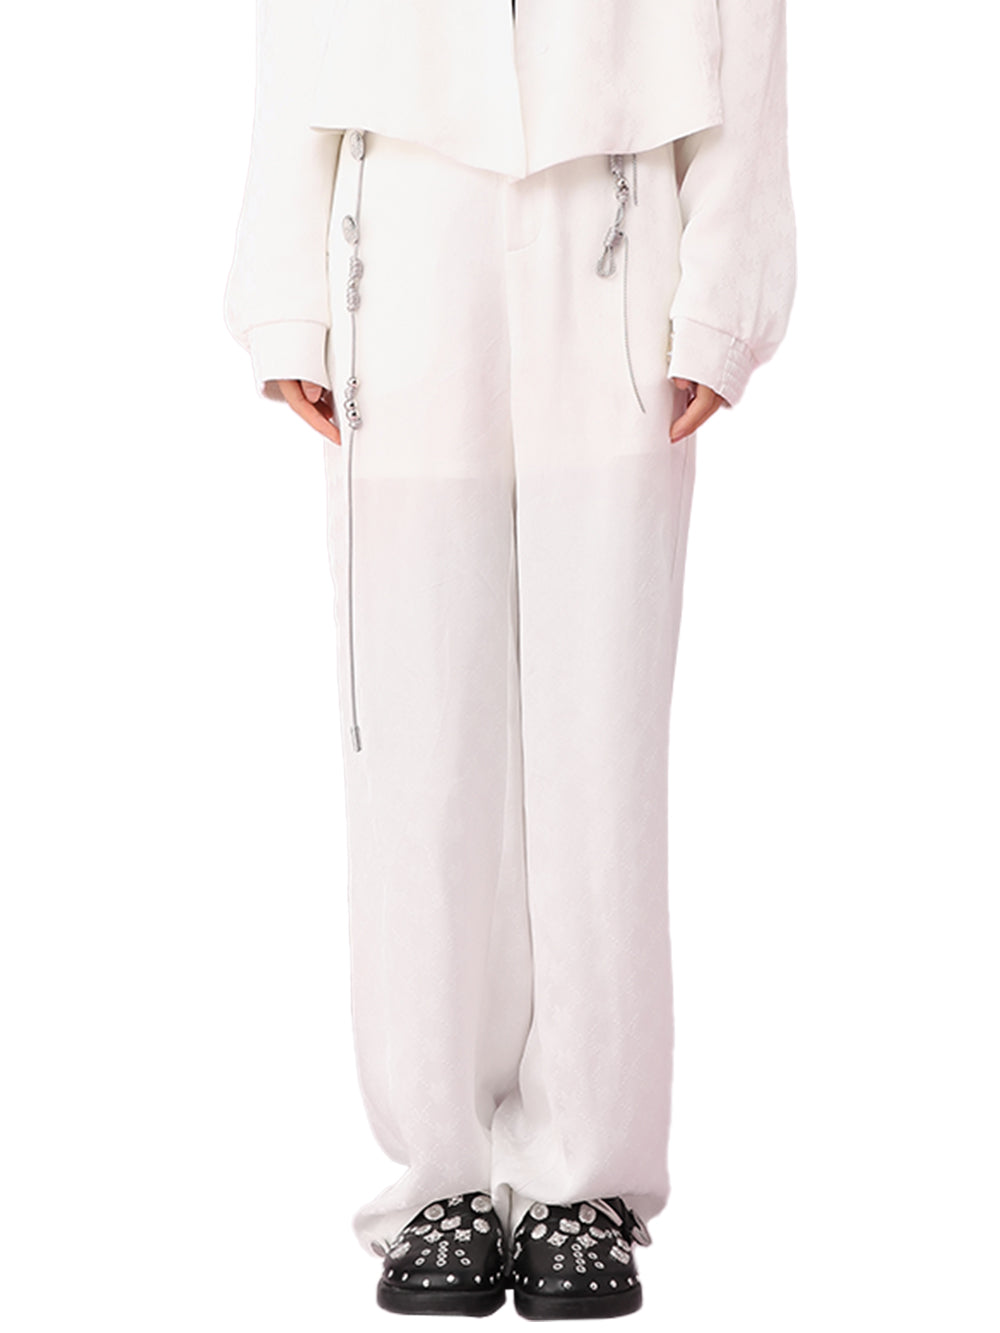 MUKZIN New White Comfortable Suit Pants